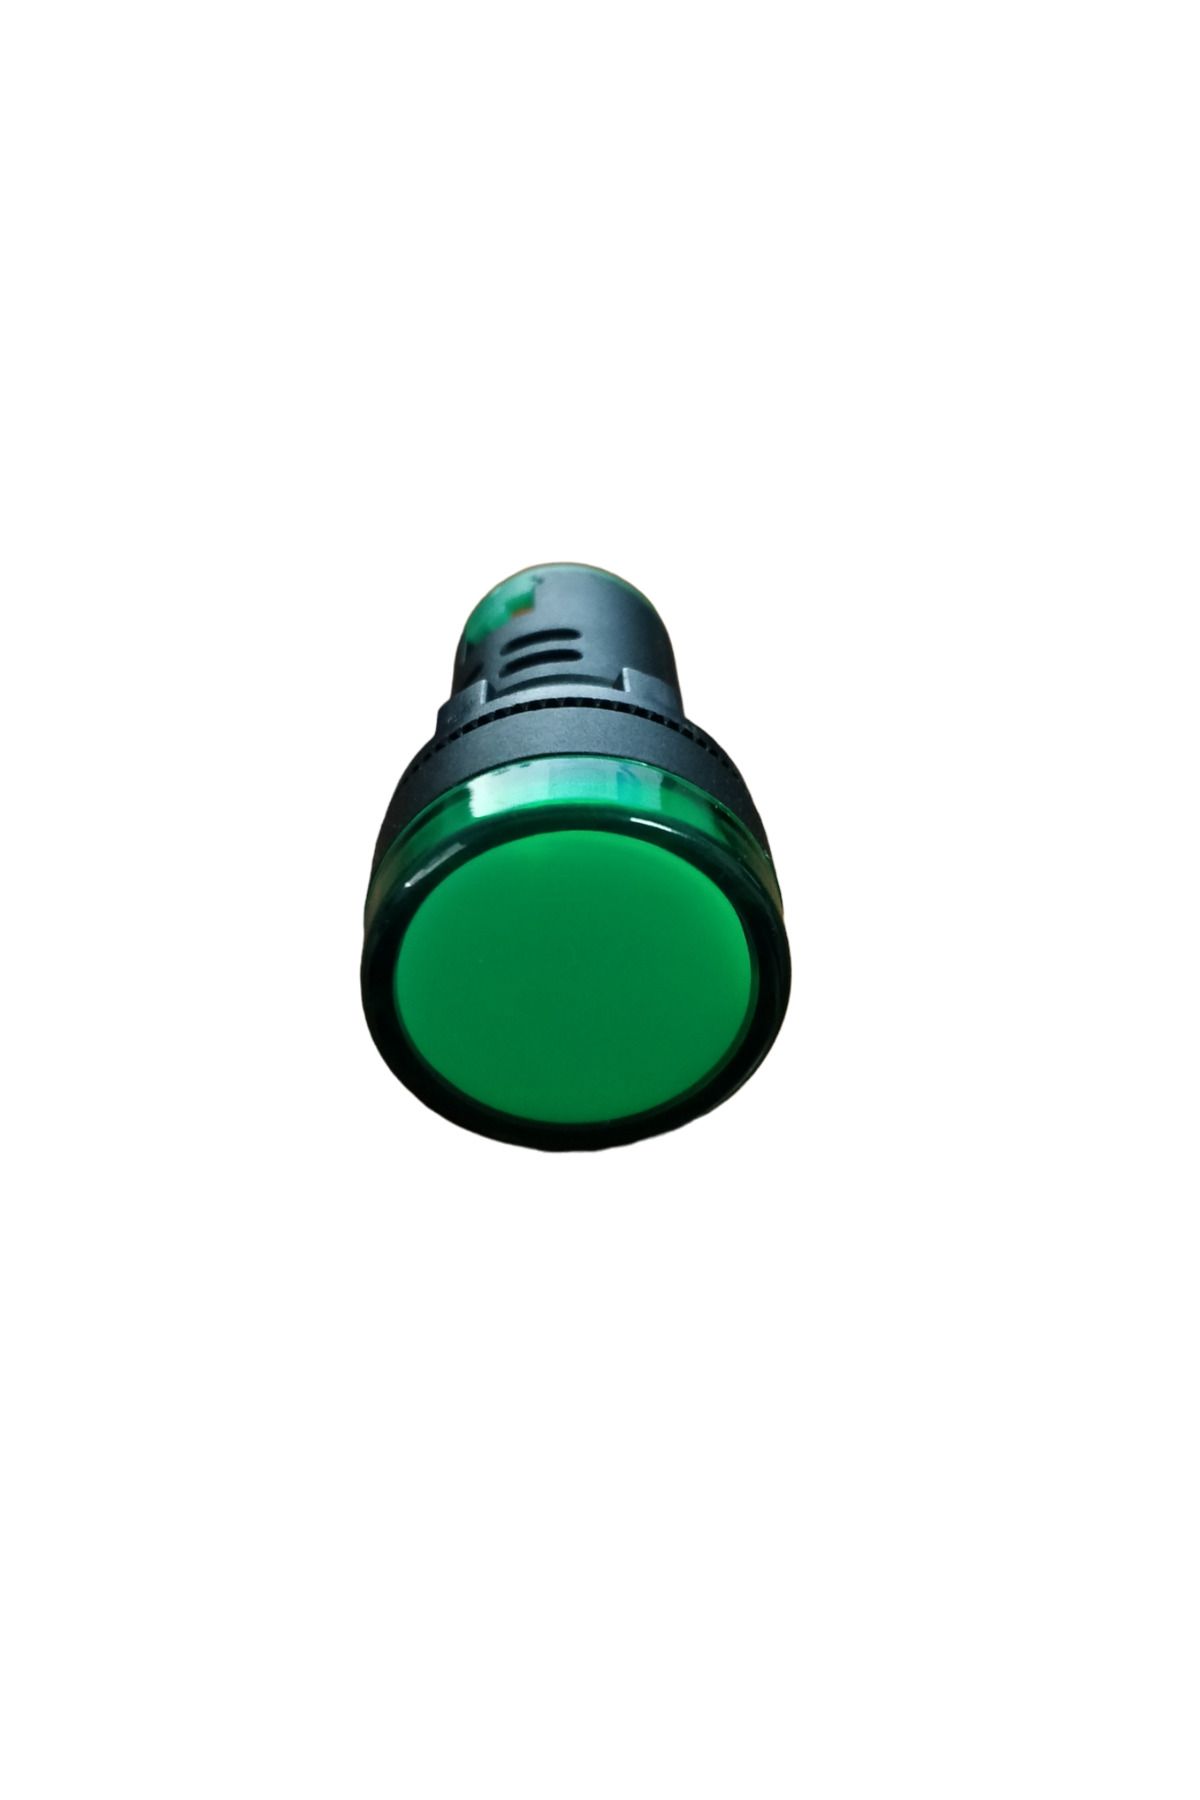 Jameson Ledli Sinyal Lambası Yeşil 230V